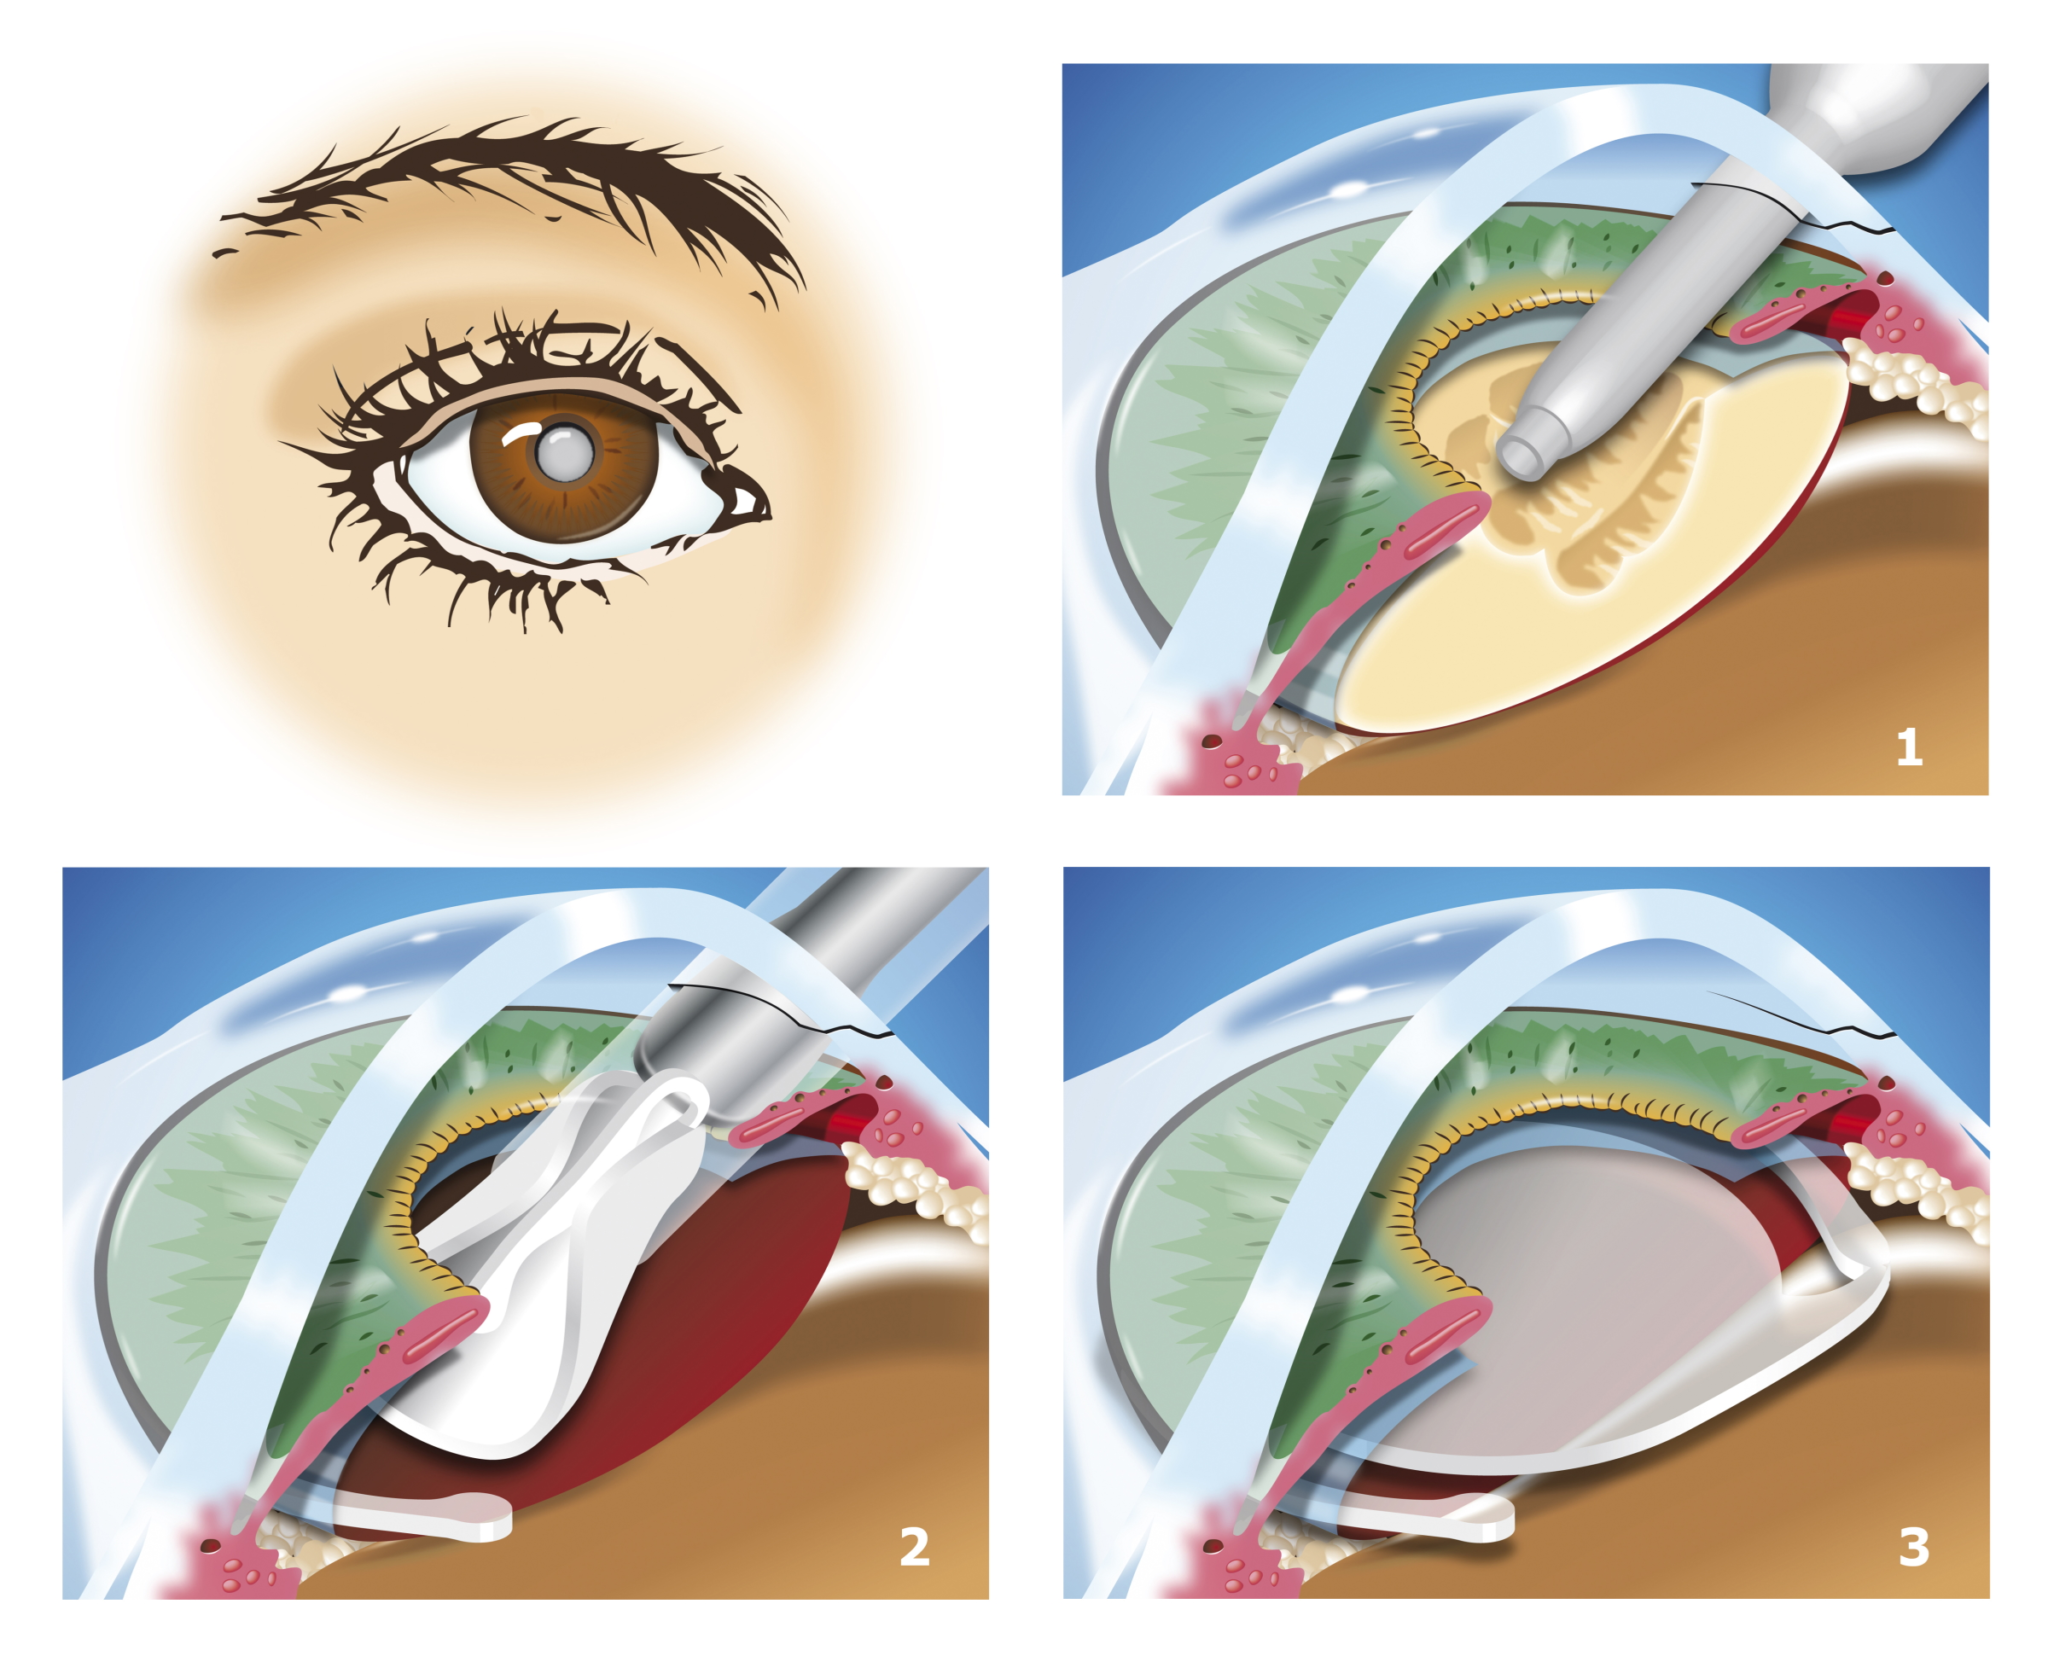 Оперативное лечение катаракты. Катаракта факоэмульсификация. Этапы операции факоэмульсификации катаракты. Ультразвуковая факоэмульсификация катаракты этапы. Факоэмульсификация катаракты с имплантацией интраокулярной линзы.